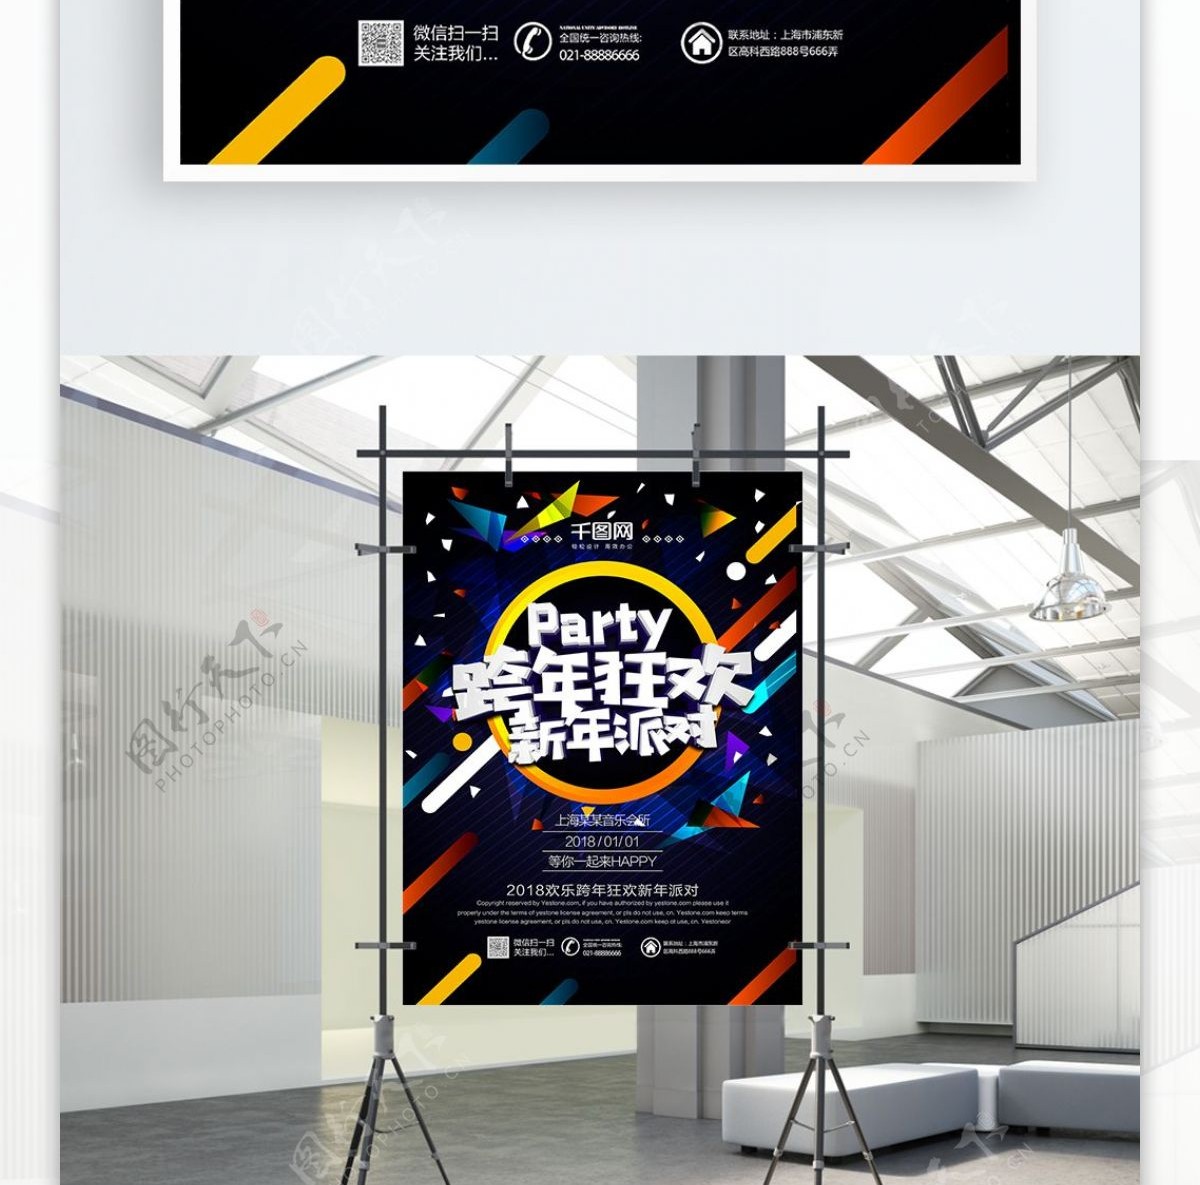 跨年狂欢新年派对酒吧活动海报PSD源文件HAPPYNEW